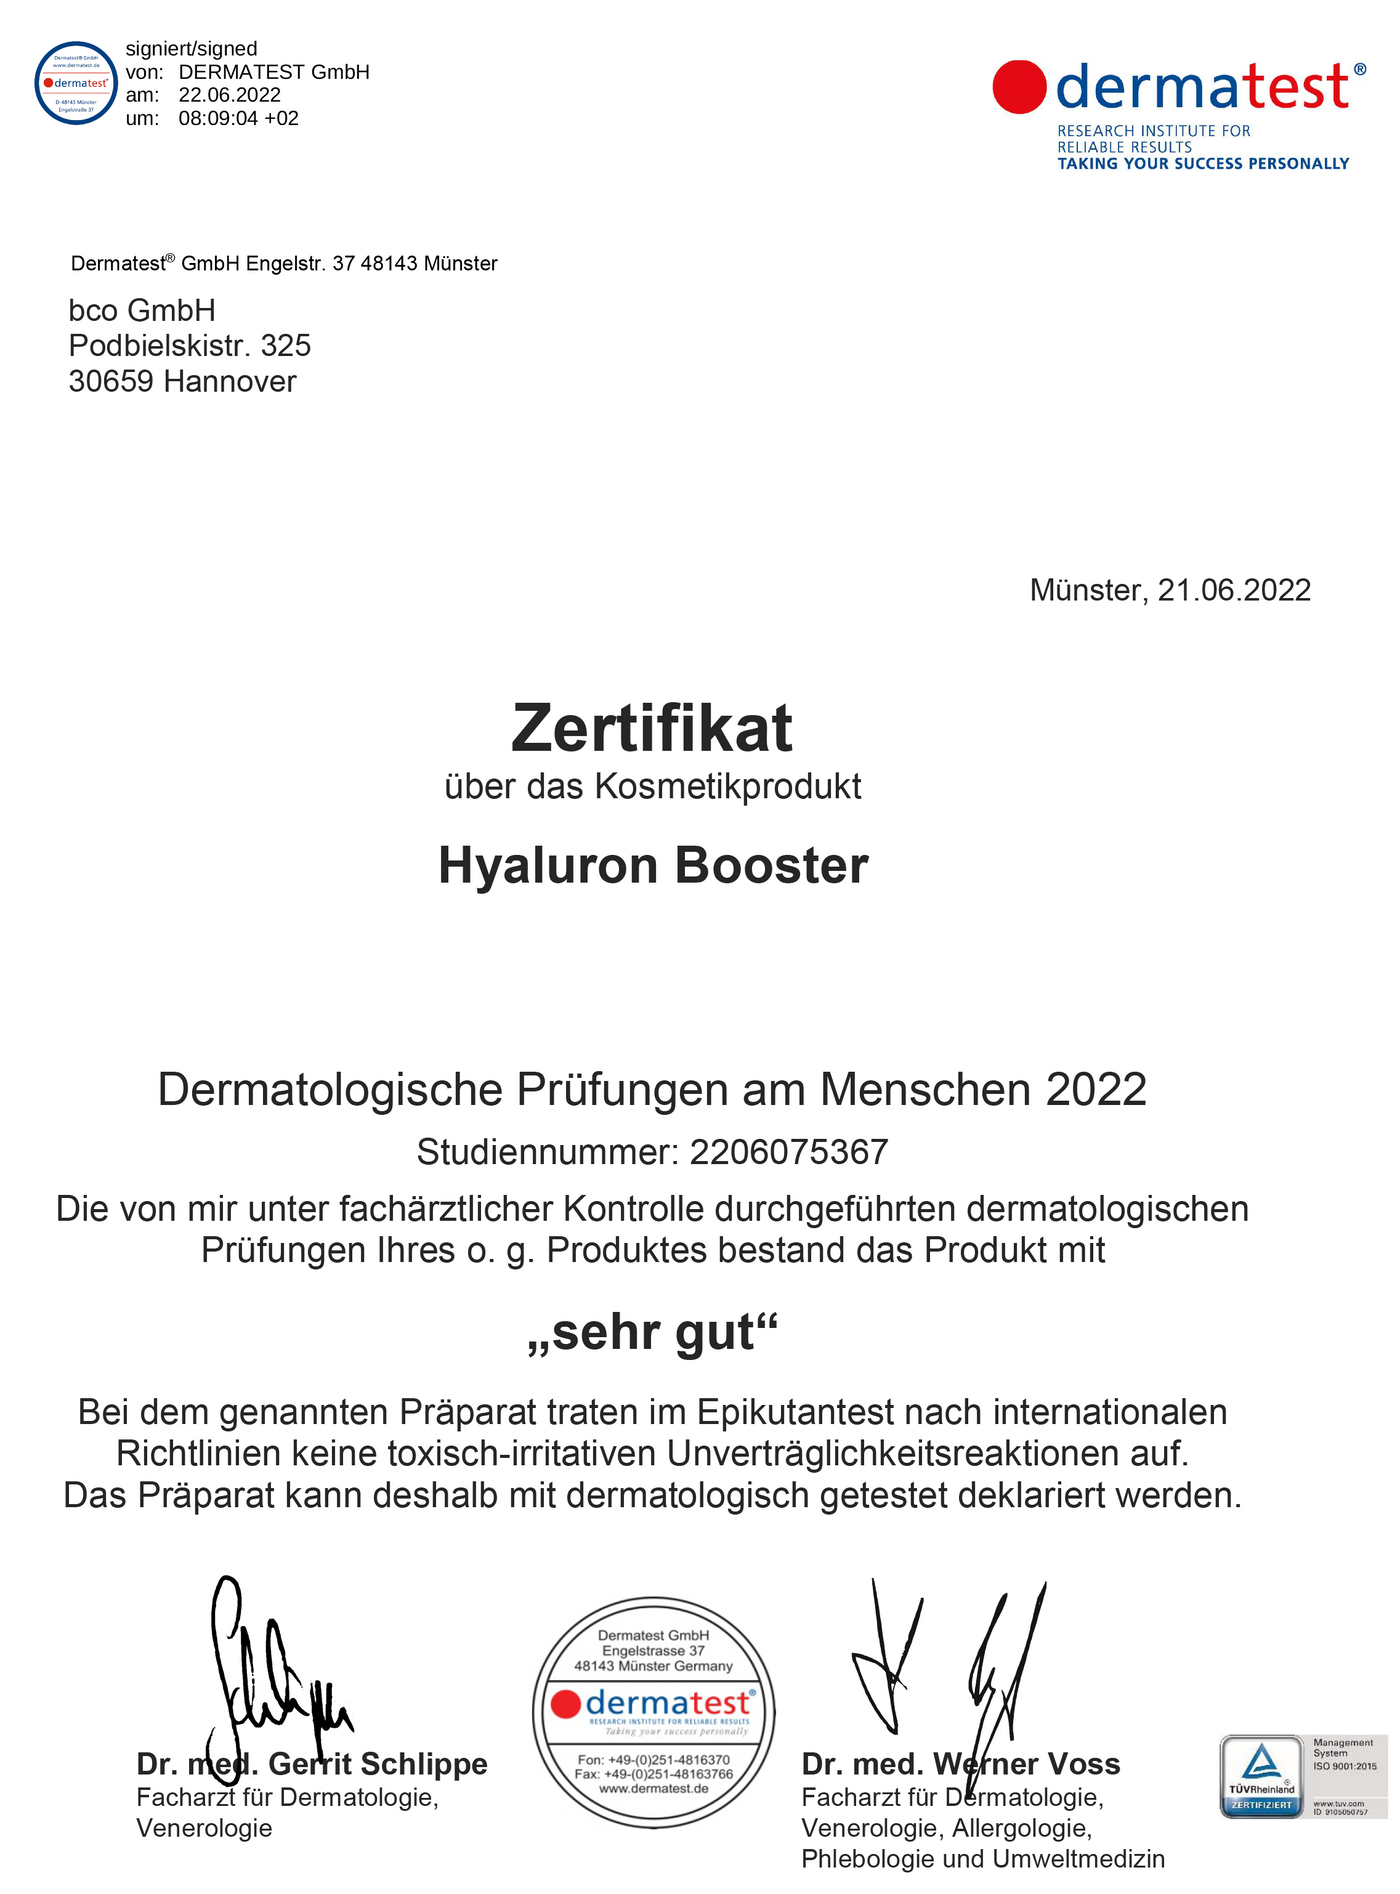 Dermatest Zertifikat vom Natürliche Hautpflege - bco Hyaluron Booster